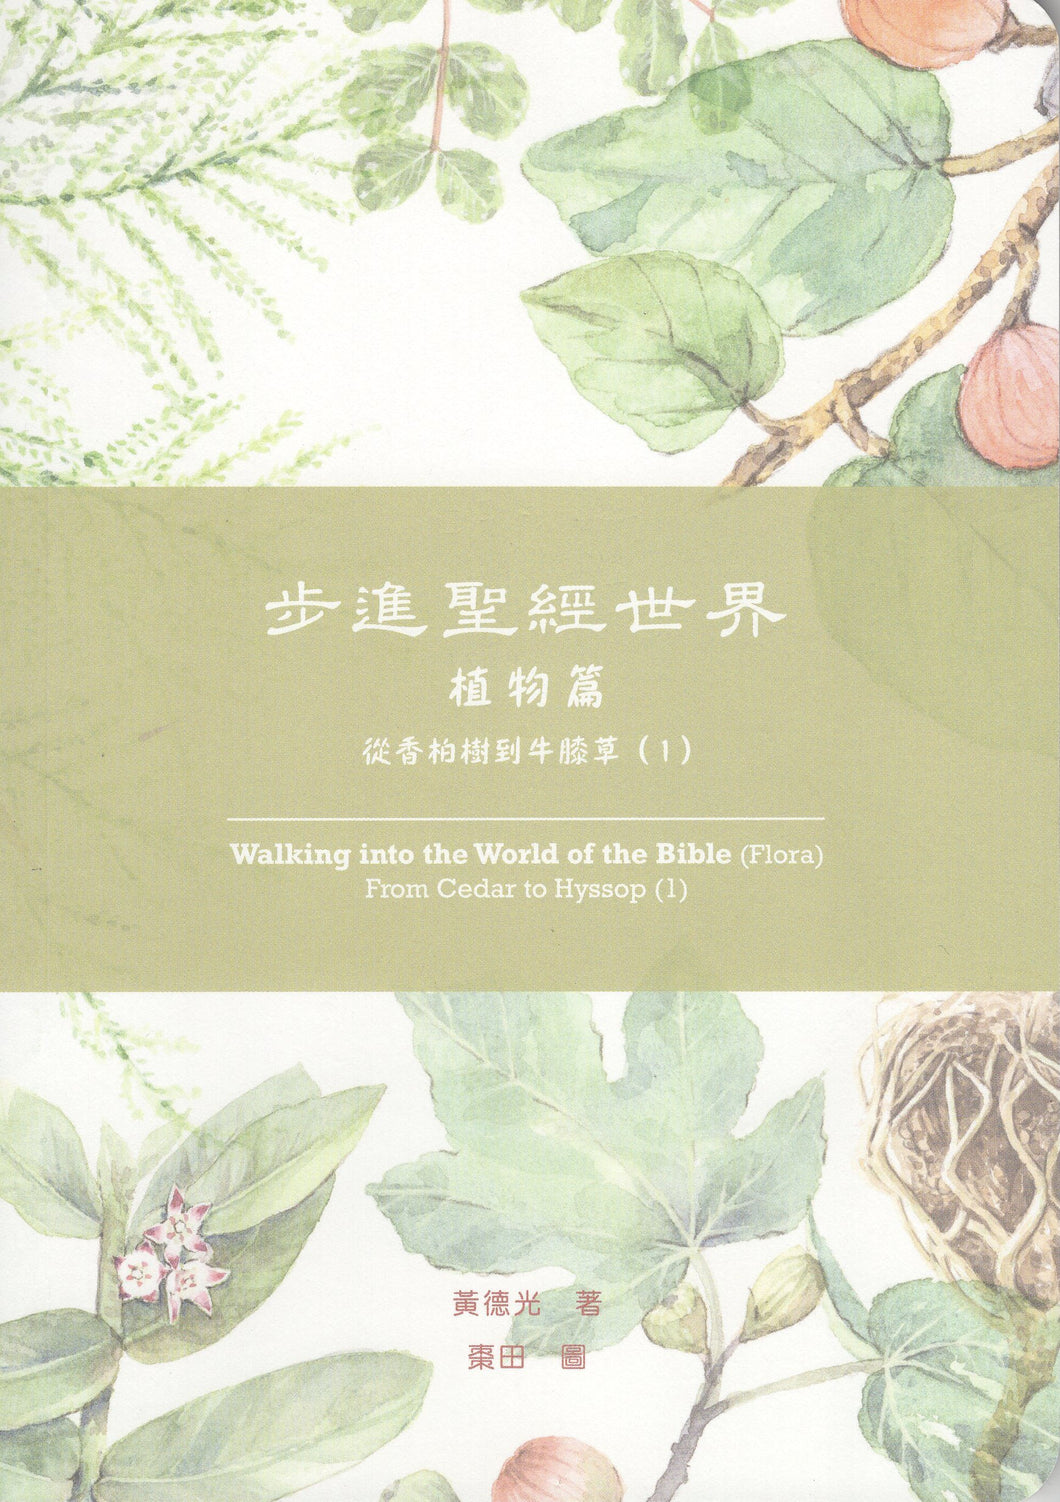 步進聖經世界（植物篇）：從香柏樹到牛膝草（1） #02F-044